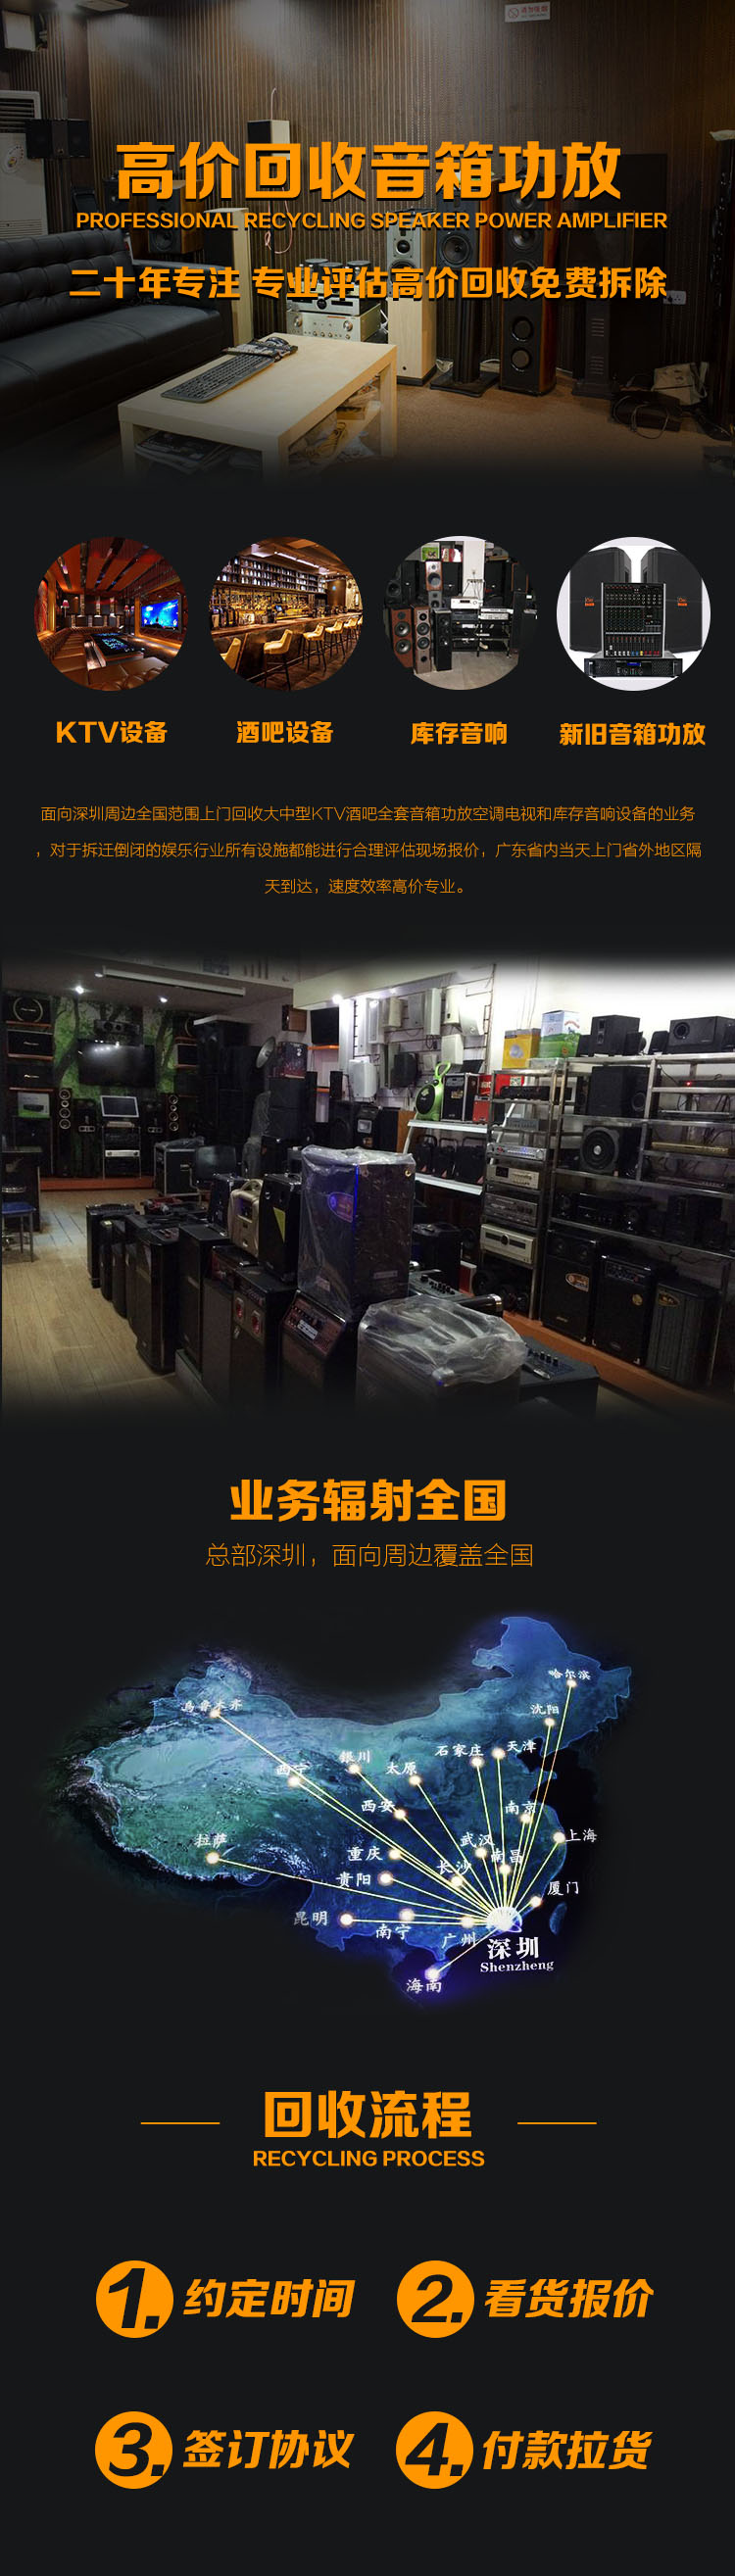 湛江回收音响设备 湛江回收KTV酒吧设备公司